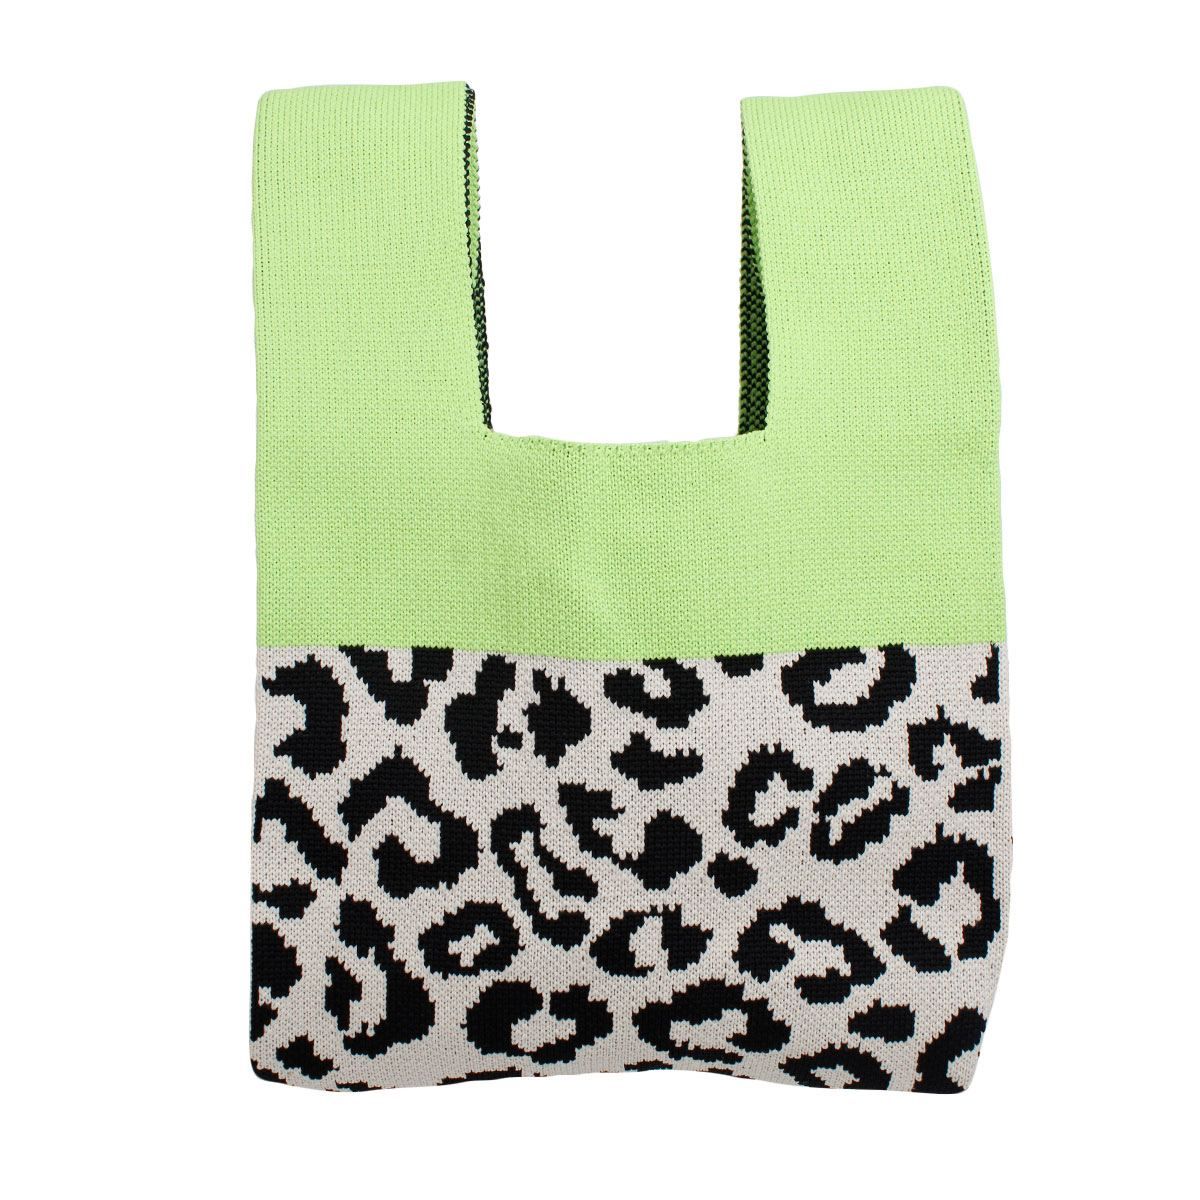 Purse Green Leopard Handbag for Women